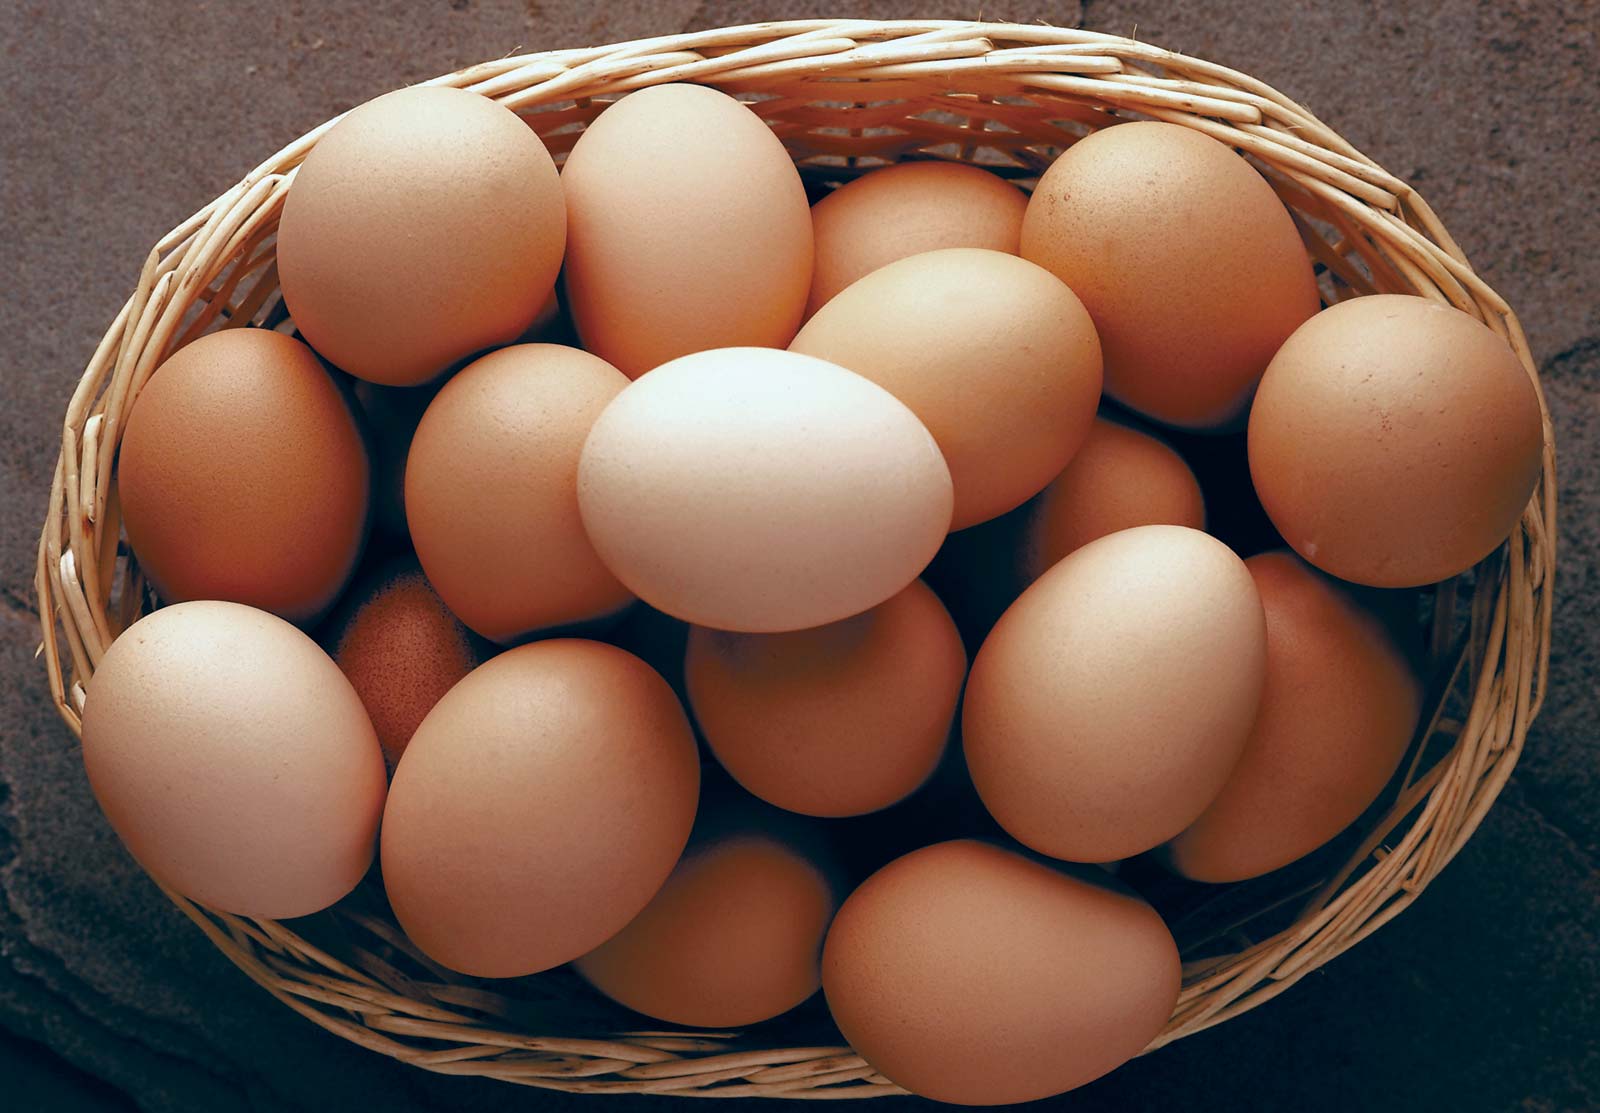 Những quan niệm sai lầm khi chế biến và ăn trứng, số 2 là thói quen khá nhiều người Việt mắc phải - Ảnh 2